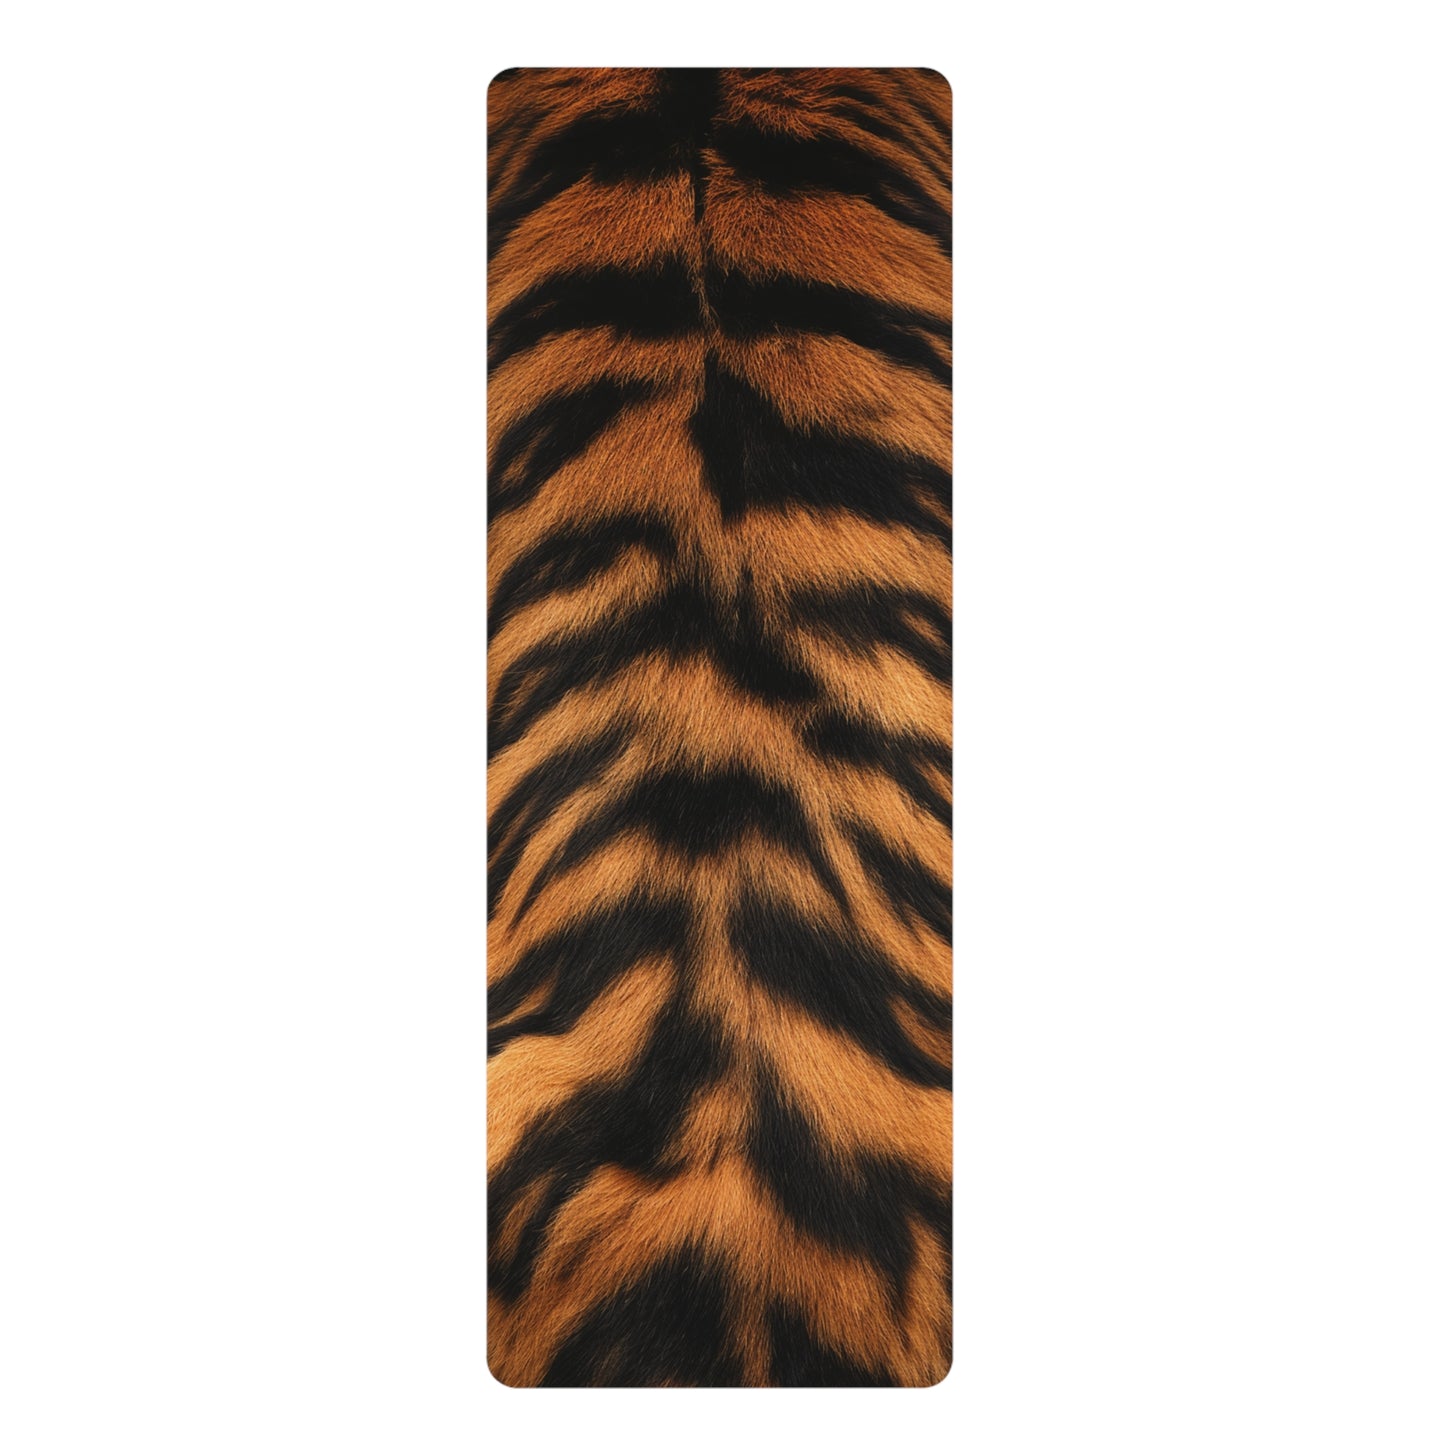 Rubber Yoga Mat - Tiger